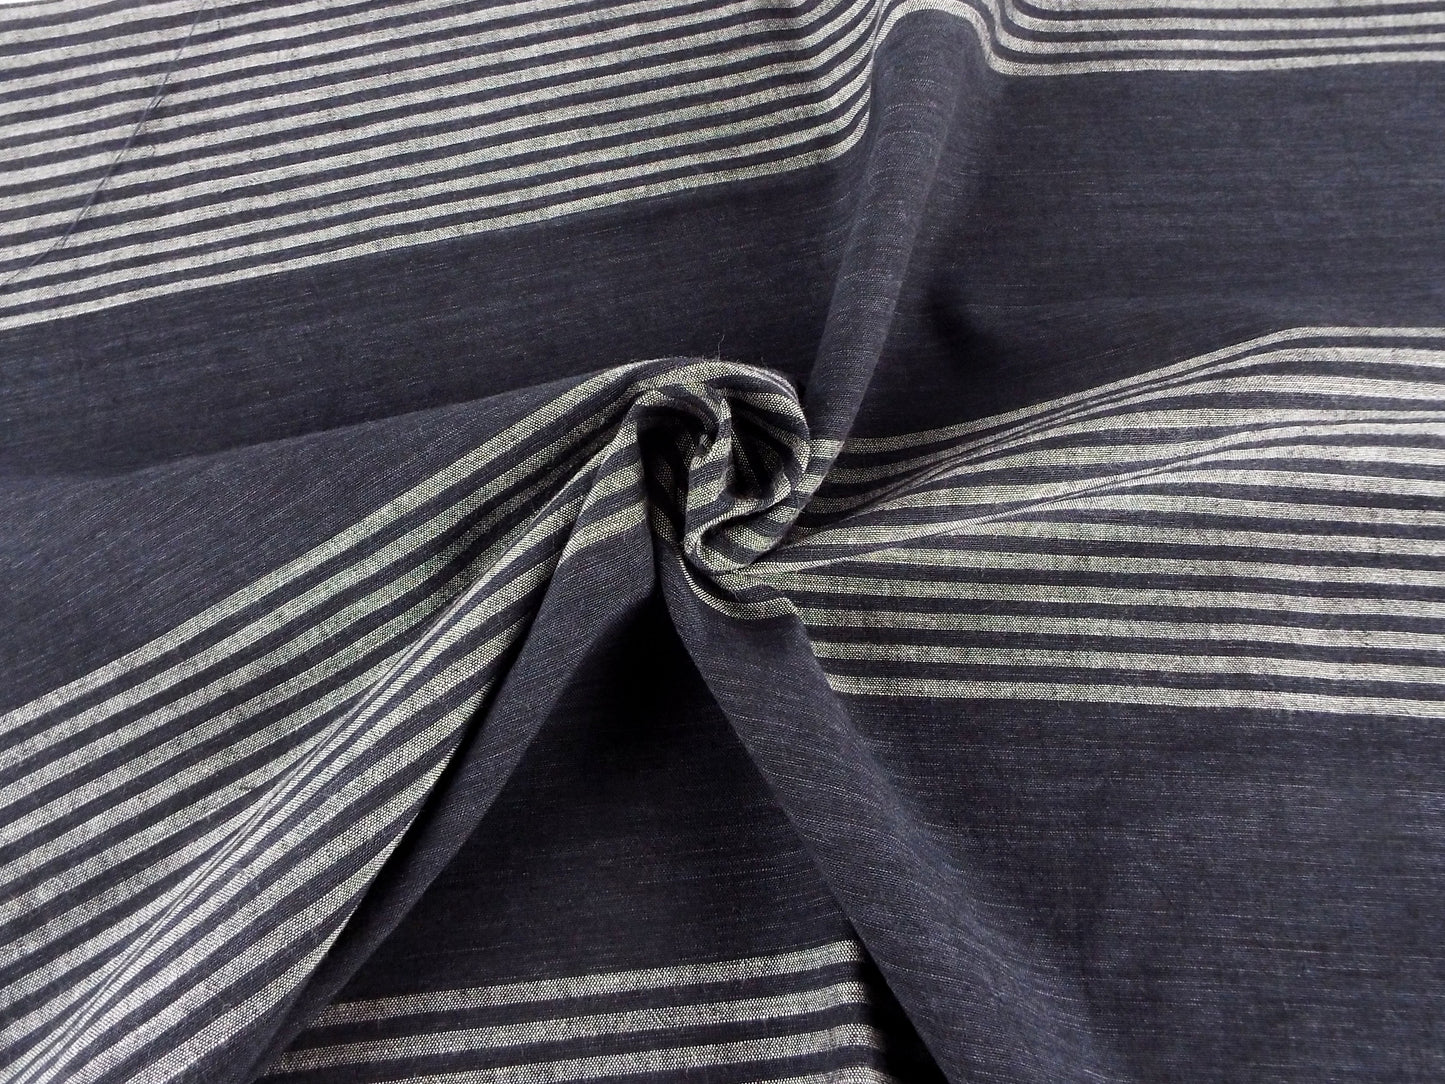 亀田縞　綿織物　薄地　#112　ABCの3パターン